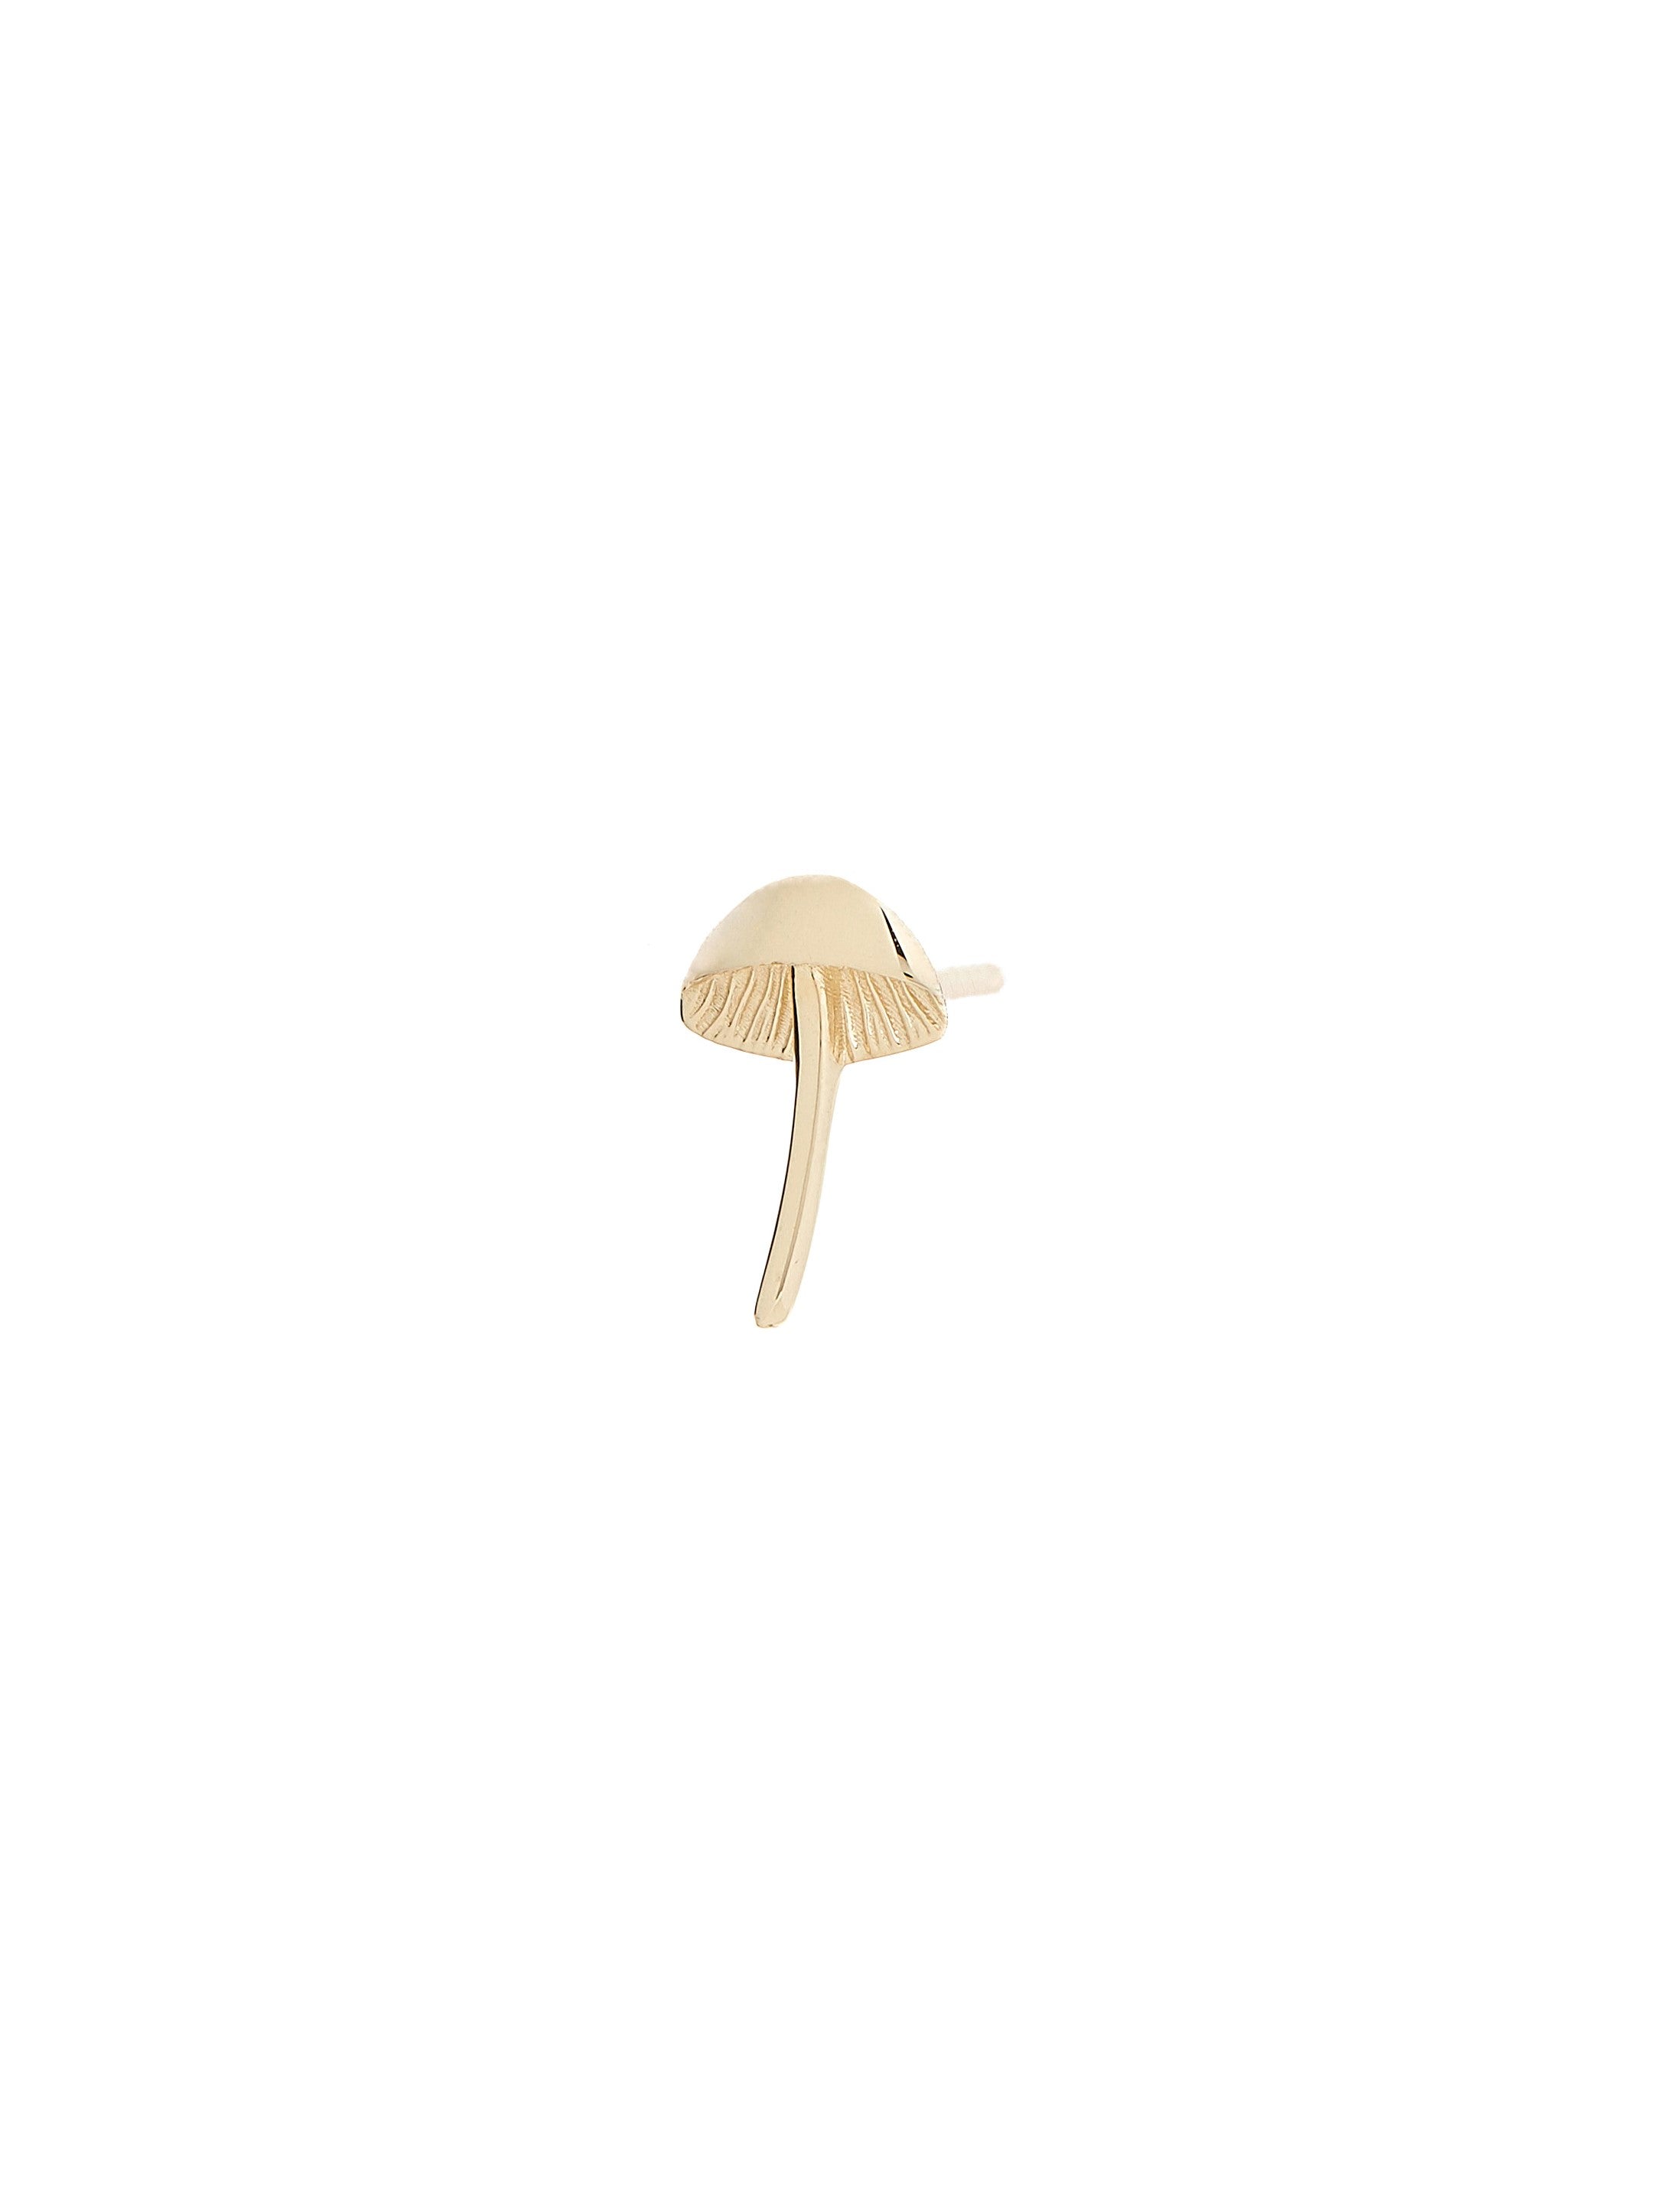 Itty Bitty Mushroom Stud